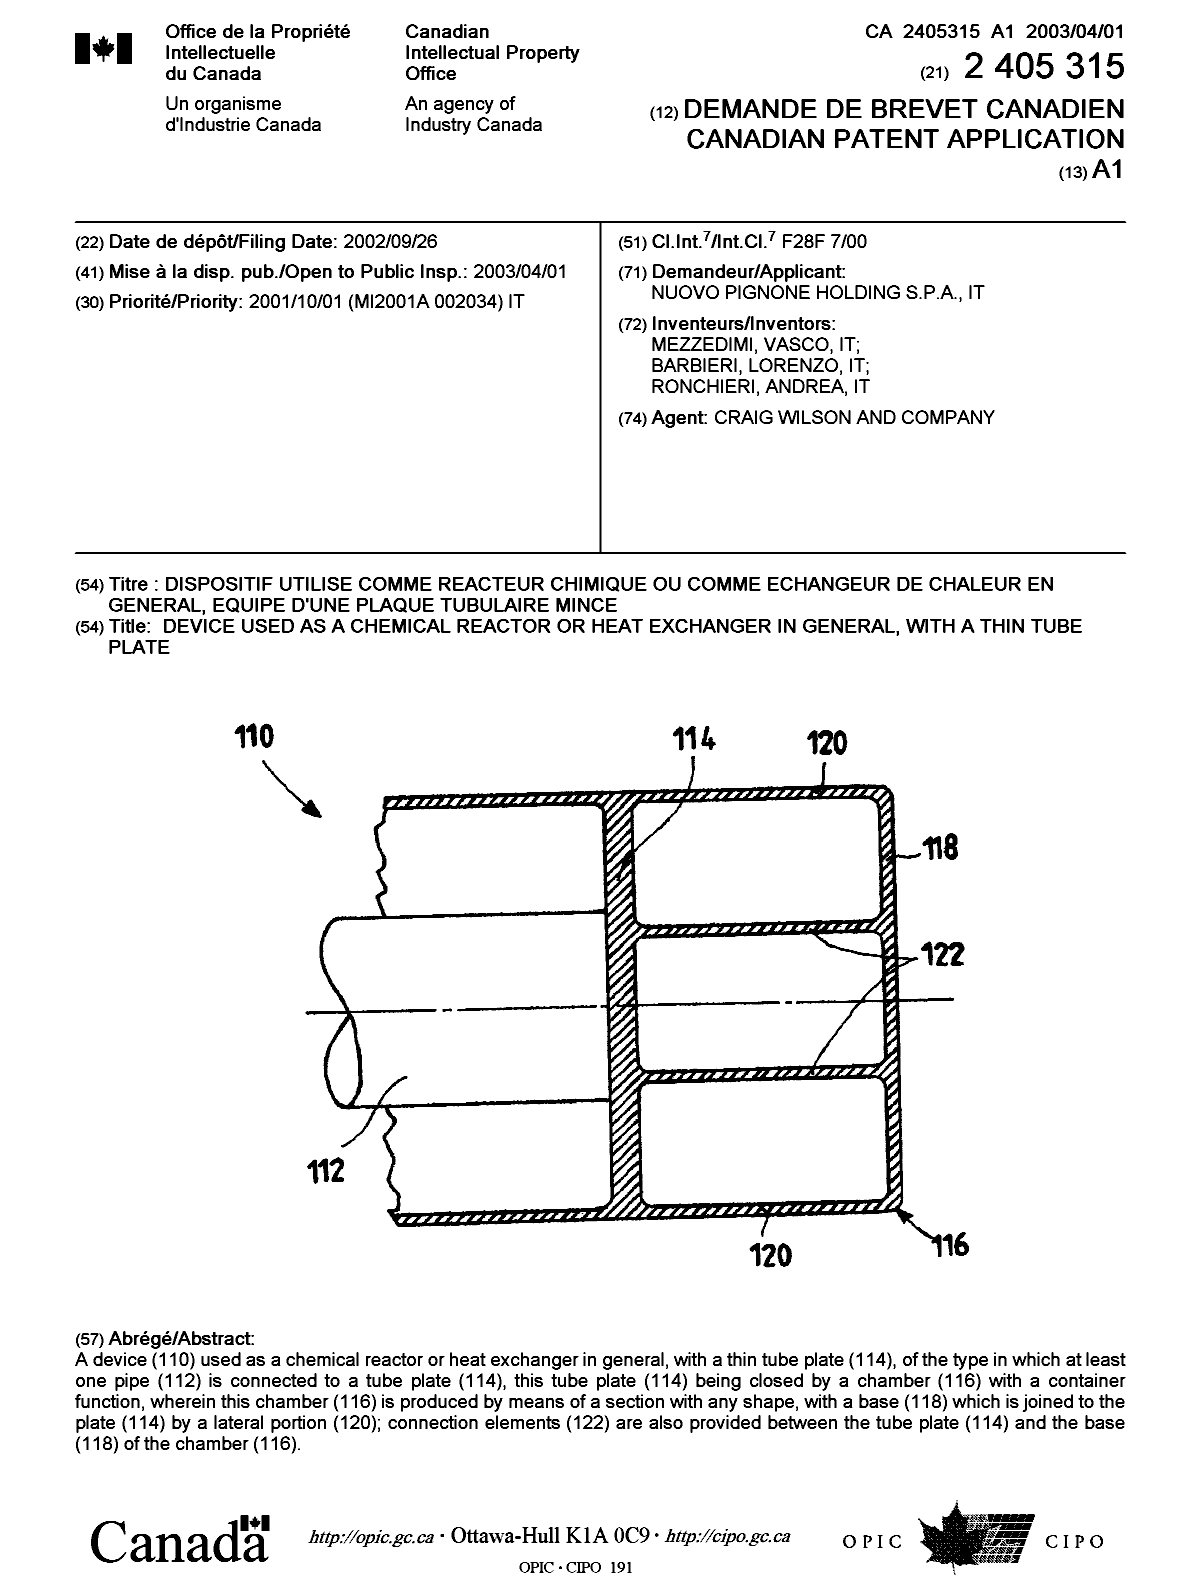 Document de brevet canadien 2405315. Page couverture 20030307. Image 1 de 1